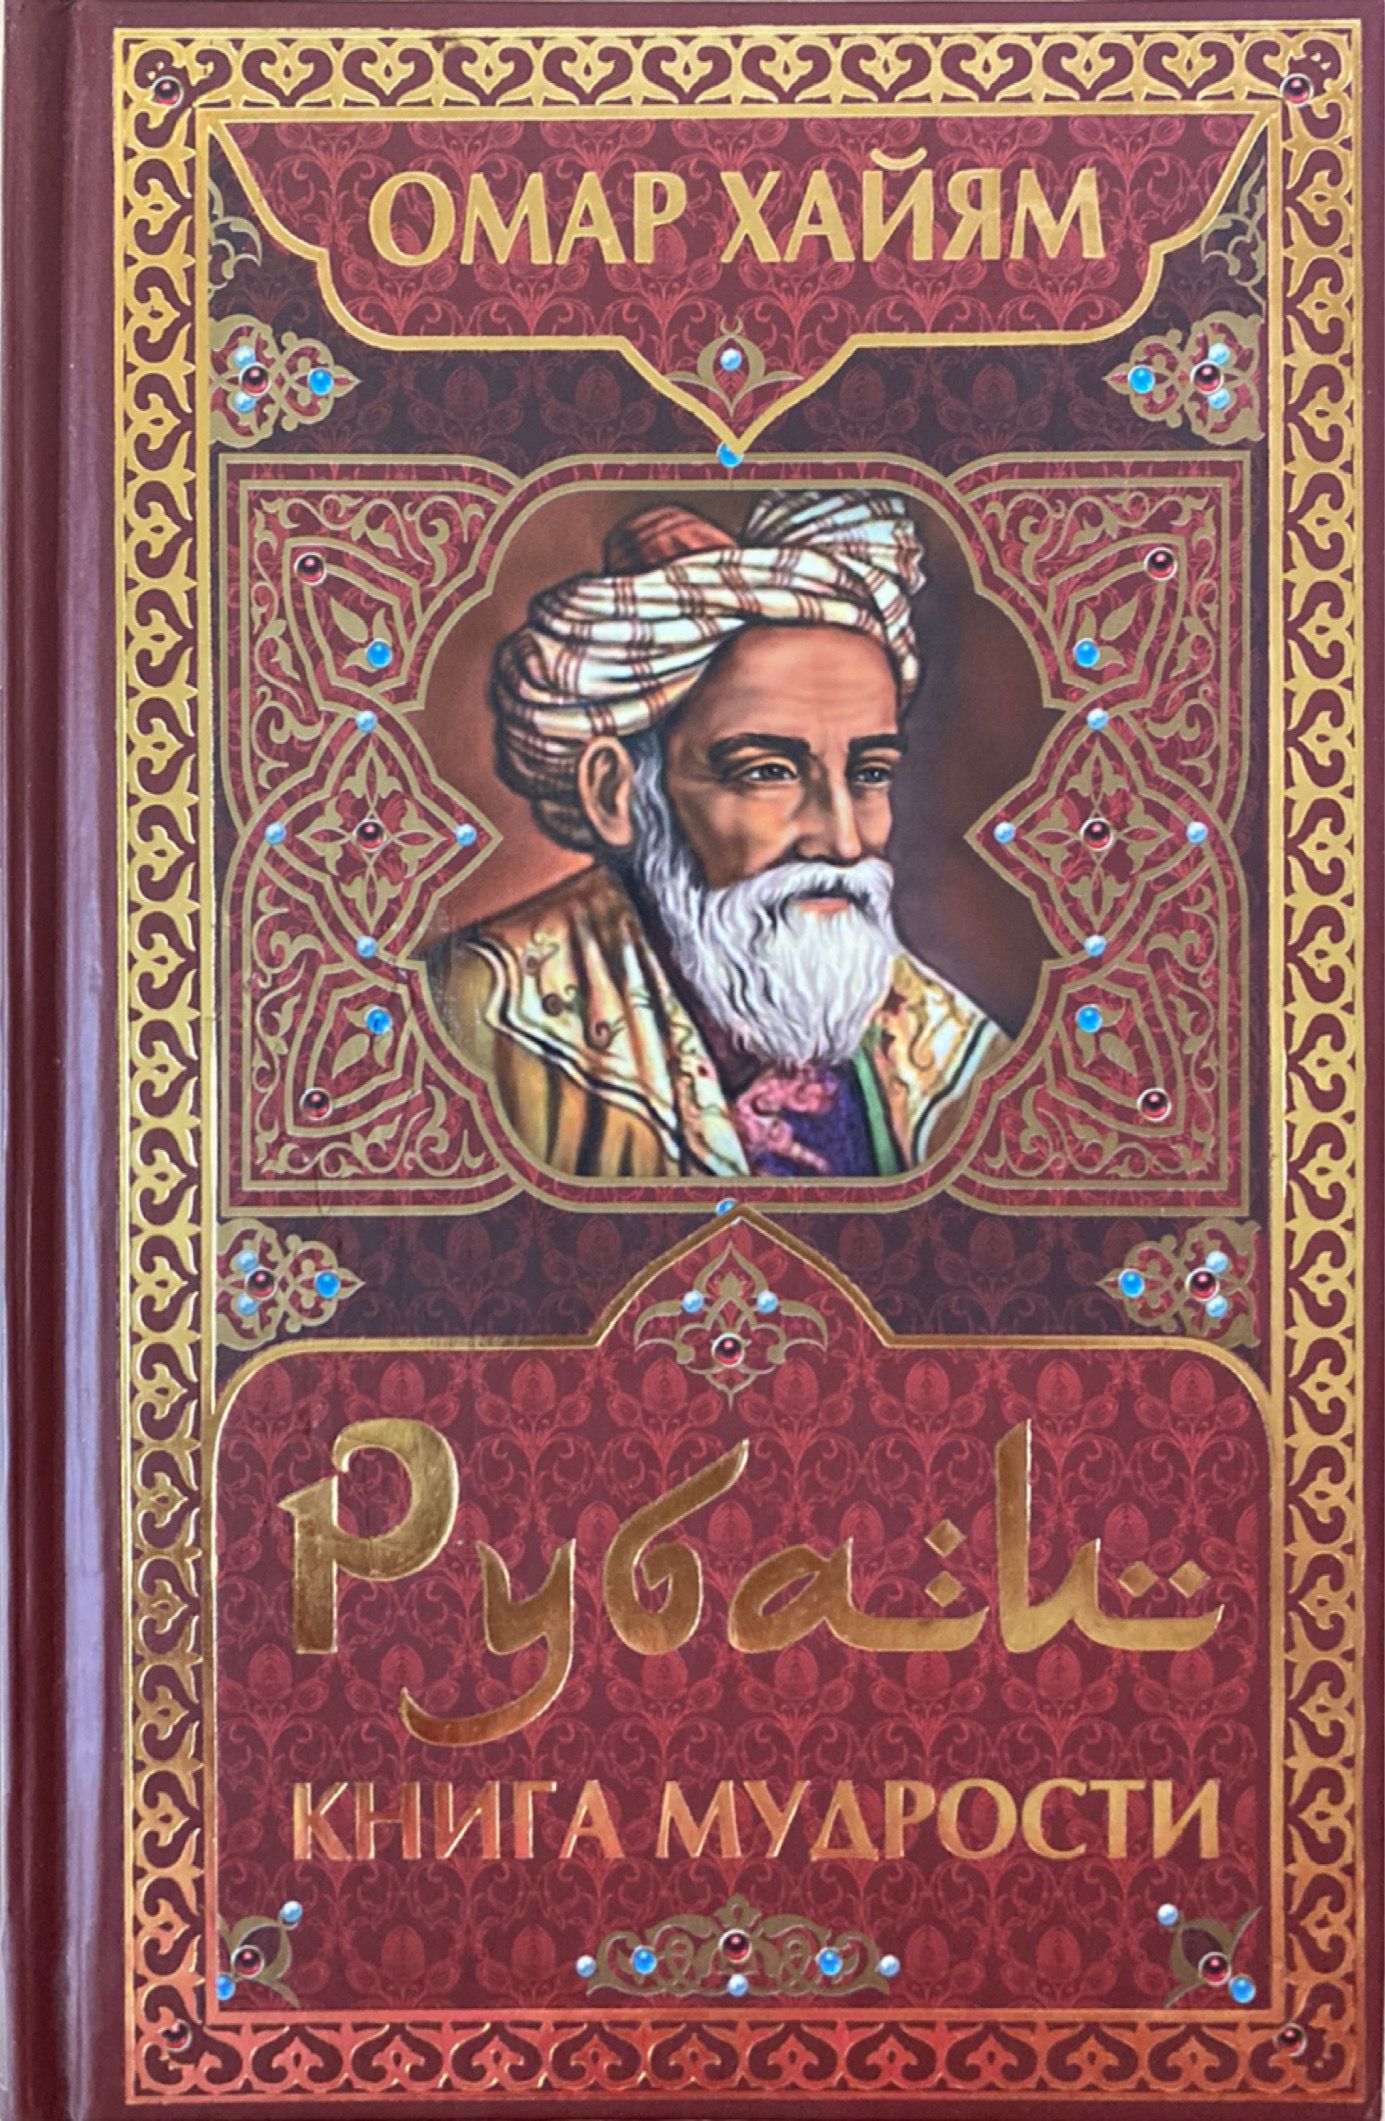 Книга рубаи. Омар Хайям. Рубаи. Книга Рубаи (Хайям Омар). Книга Рубаи (Хайям о.). Рубаи мудрости Омар Хайям.